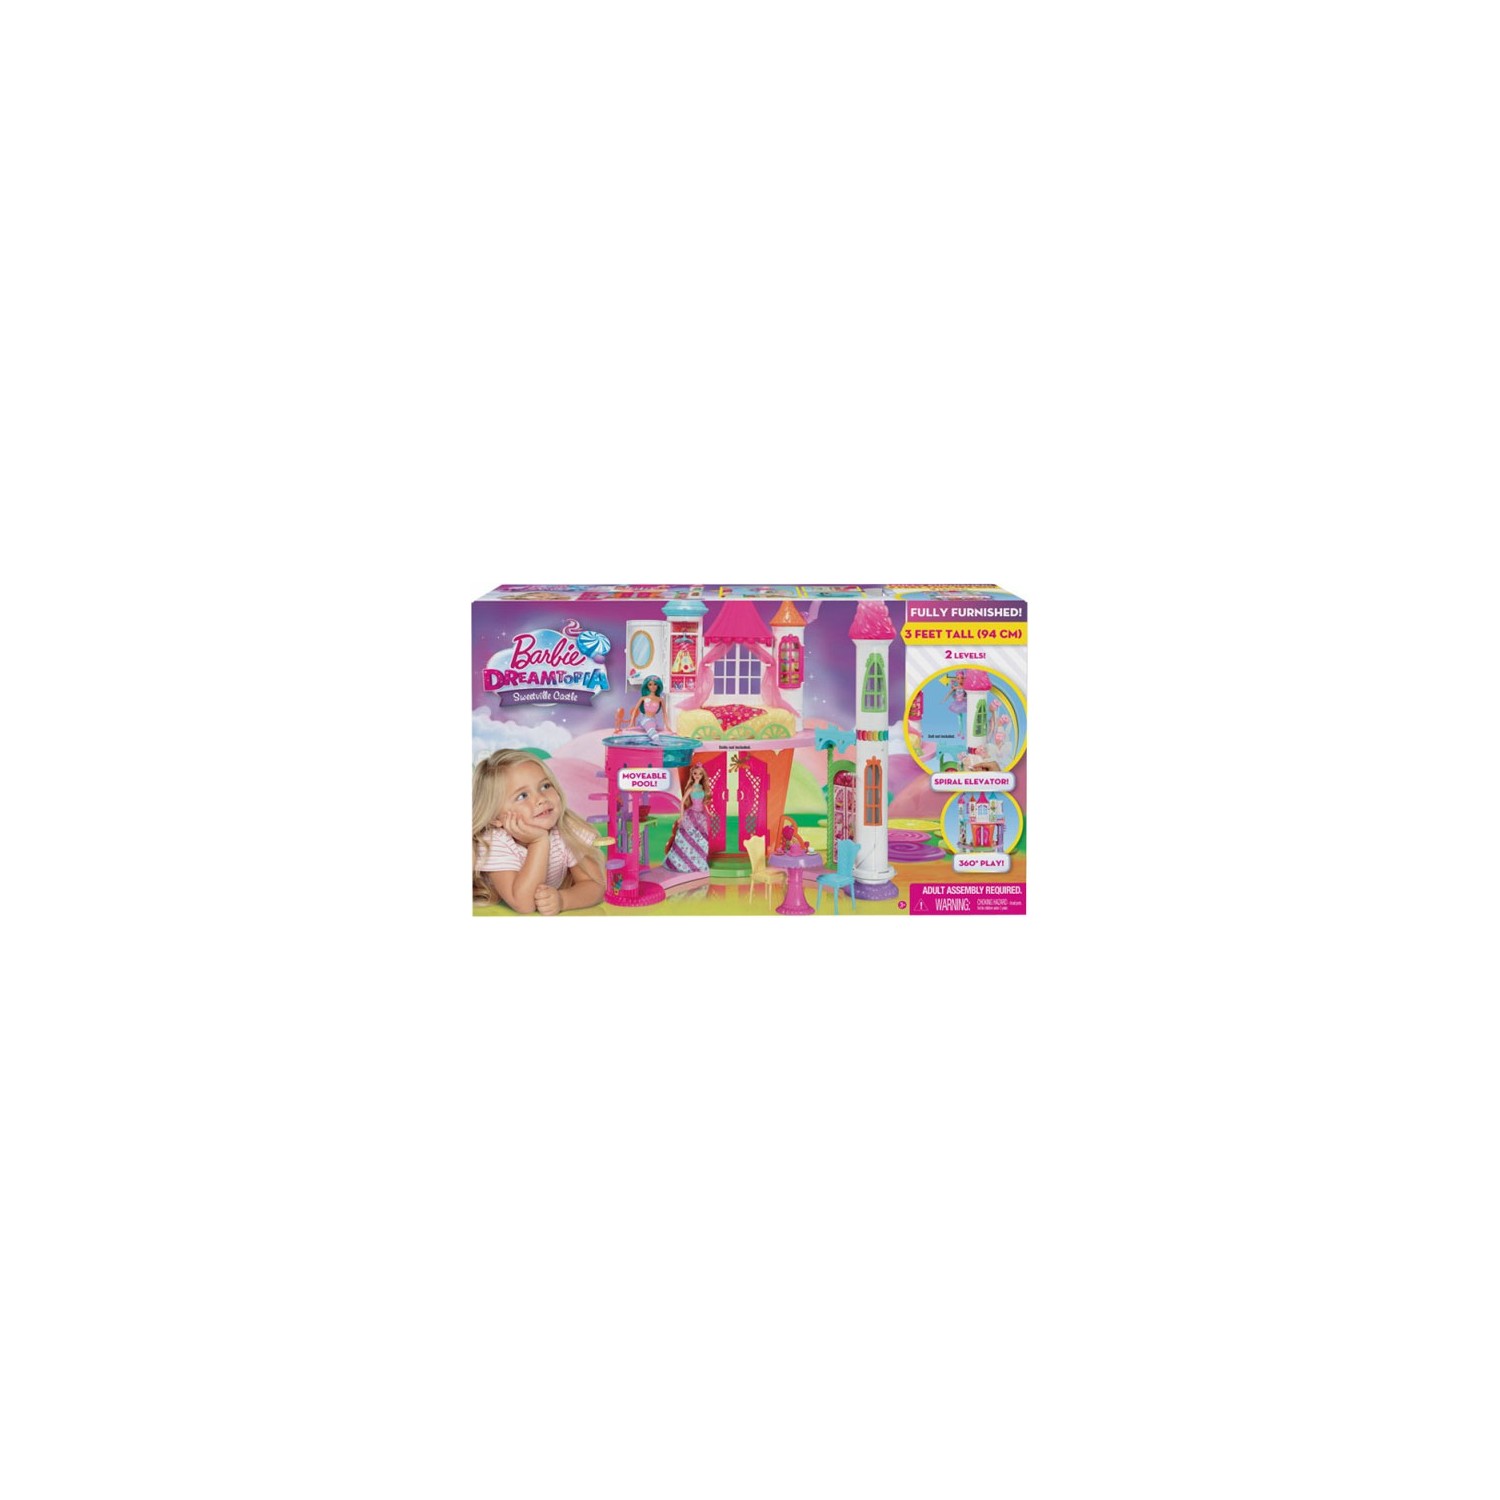 Кукла Barbie Dreamtopia Candy Kingdom Castle DYX32 игровой набор barbie dreamtopia tea party